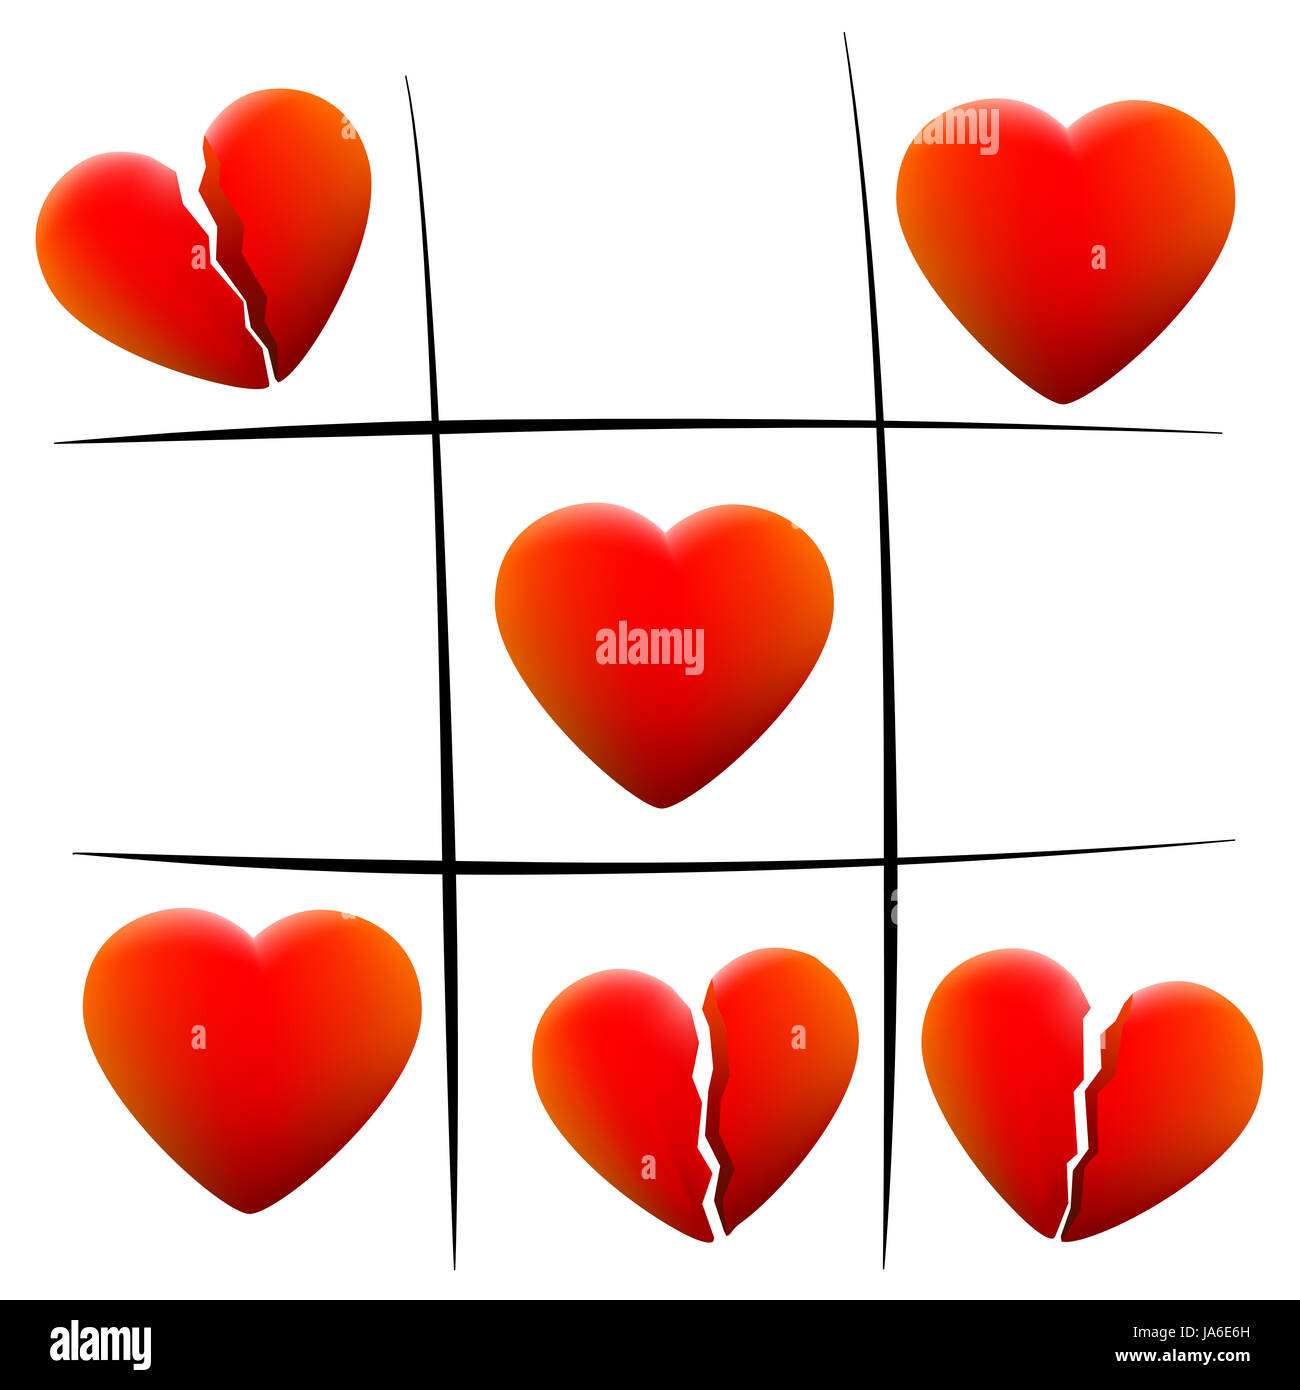 Heartbreak tic tac toe - amore il cuore e il cuore spezzato - illustrazione su sfondo bianco. Foto Stock